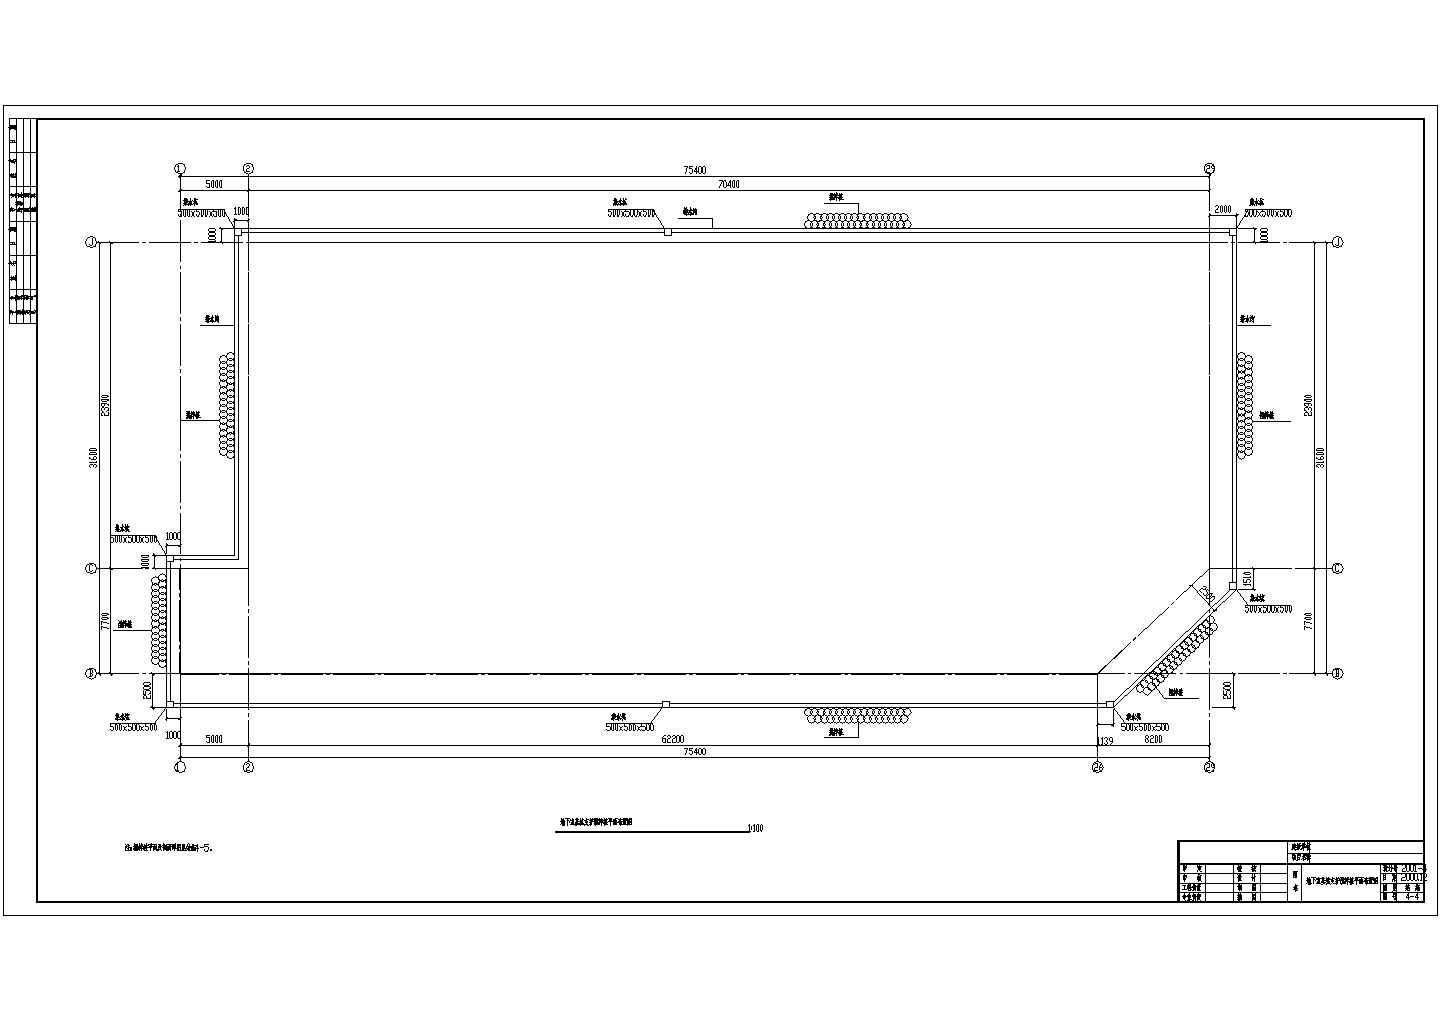 17层带地下室框剪筒体综合楼结构施工图